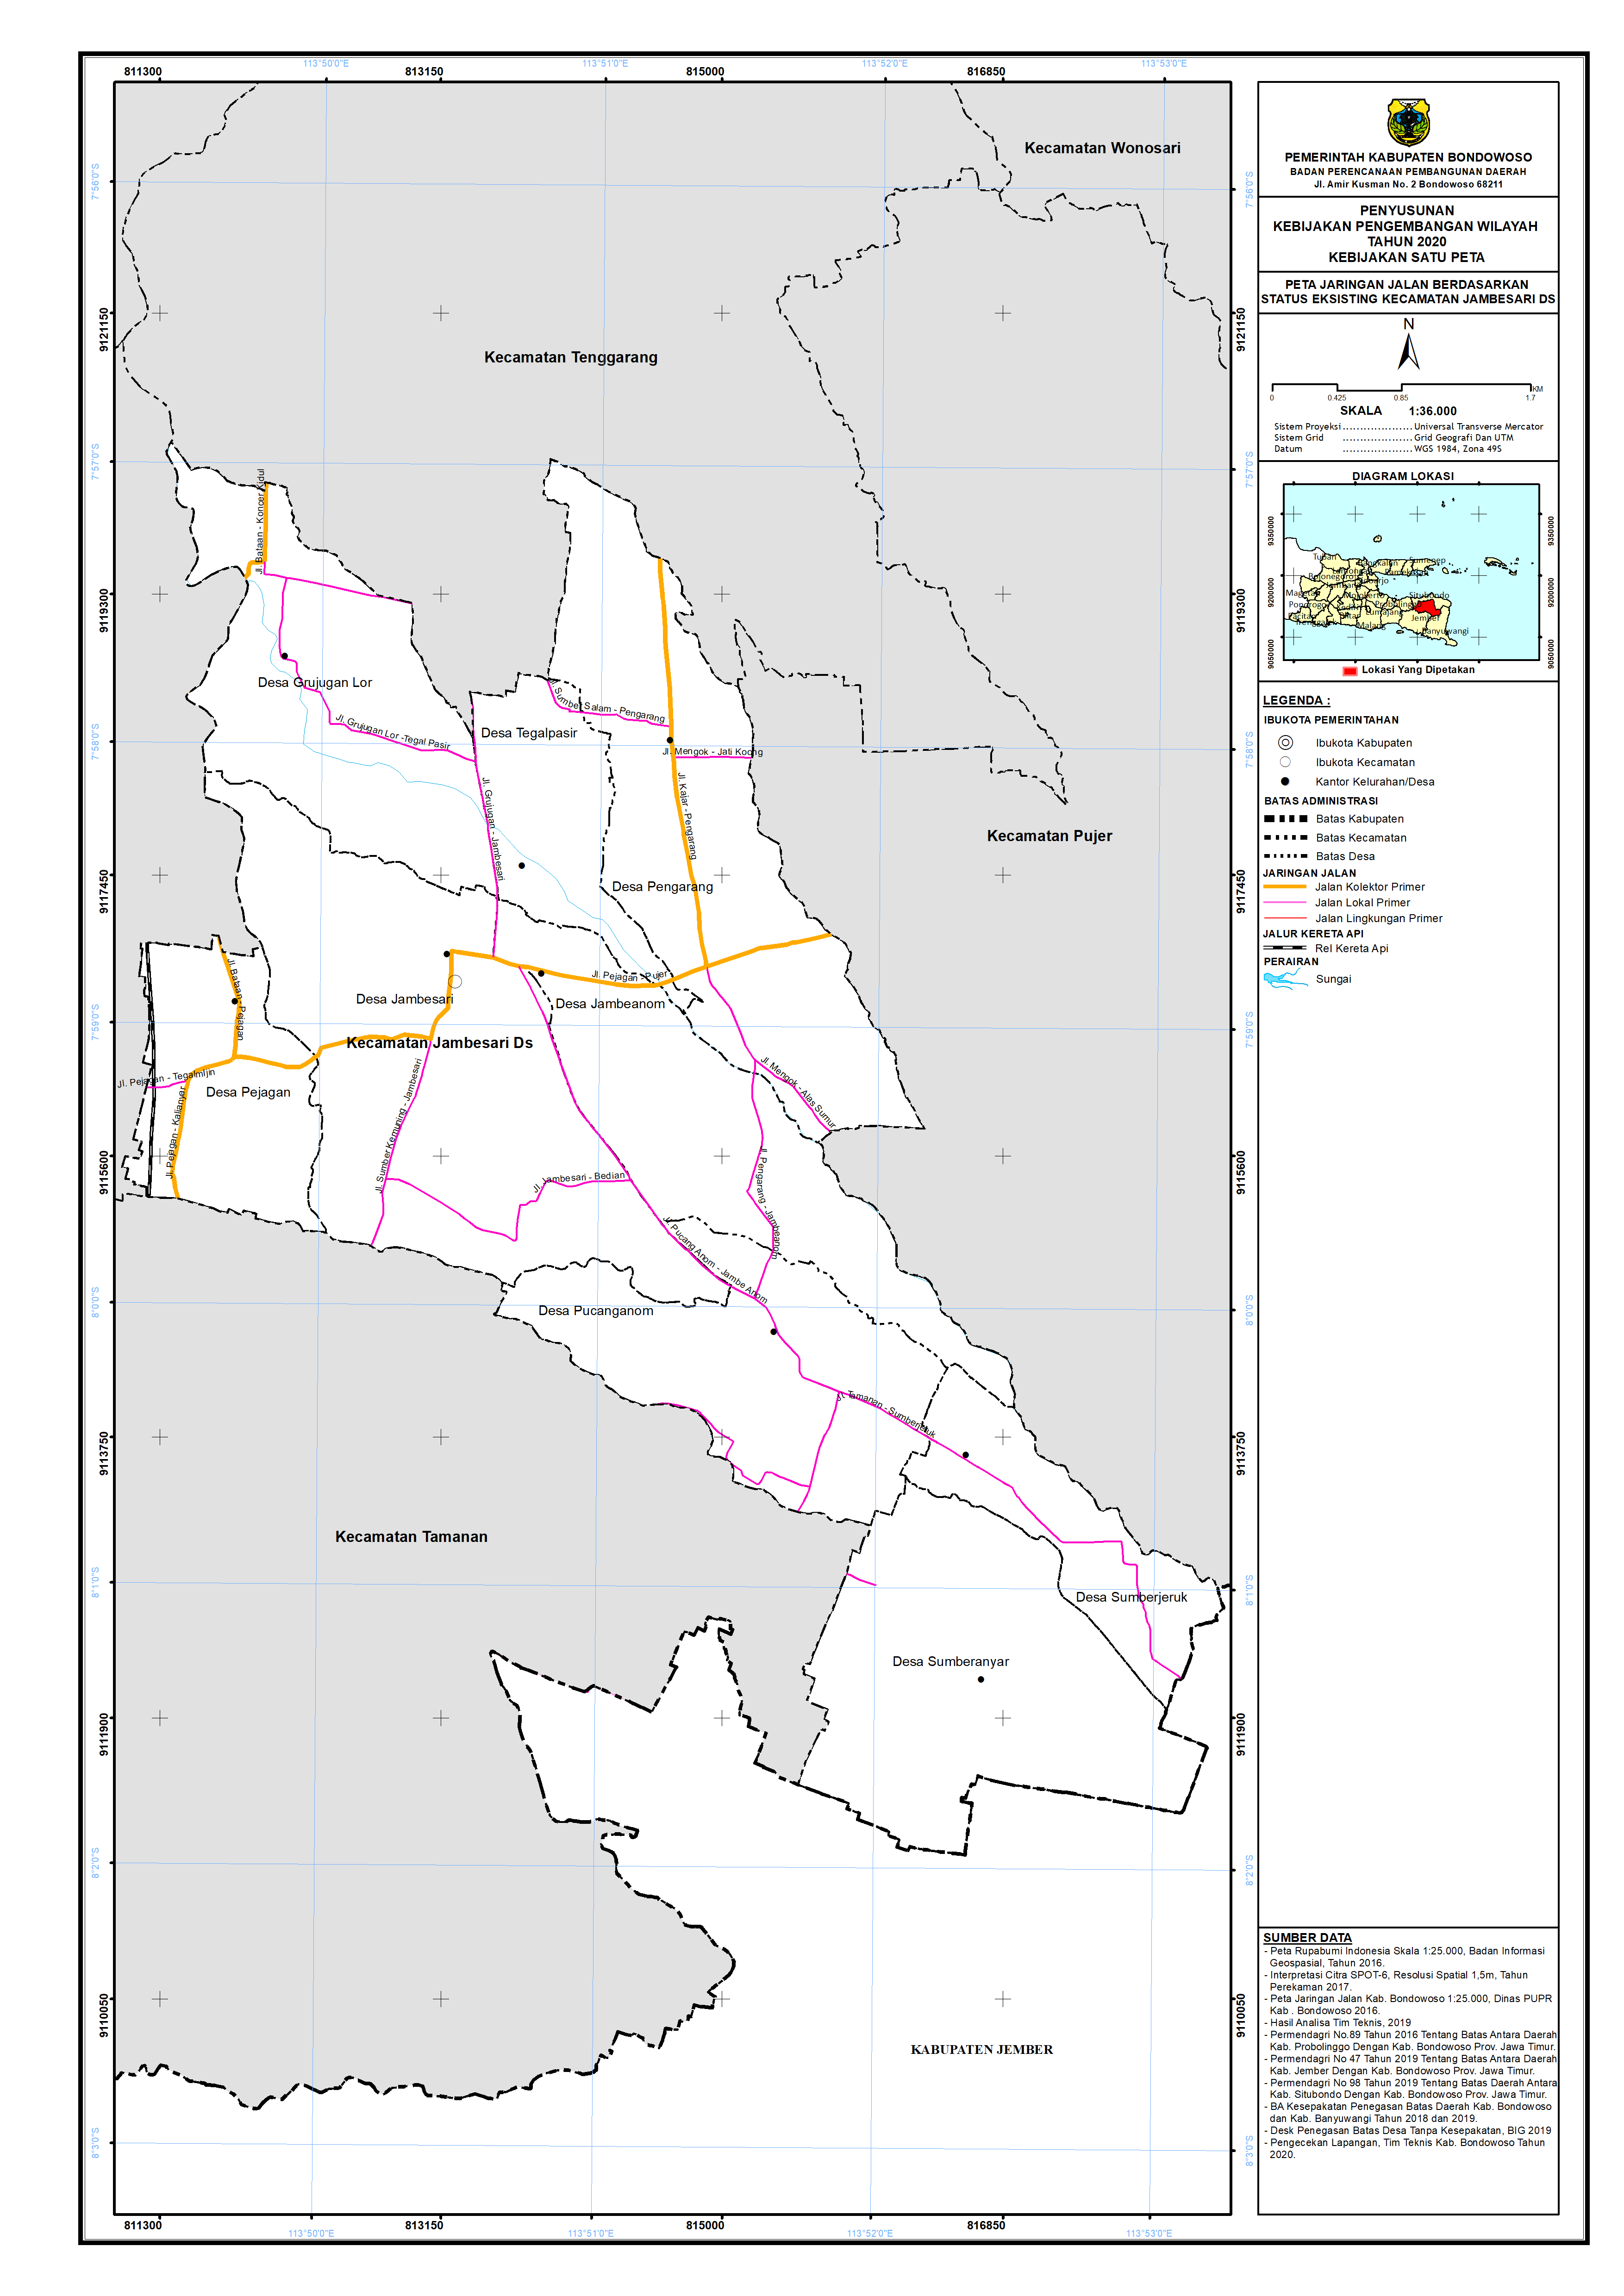 Peta Jaringan Jalan Berdasarkan Status Eksisting Kecamatan Jambesari DS.png